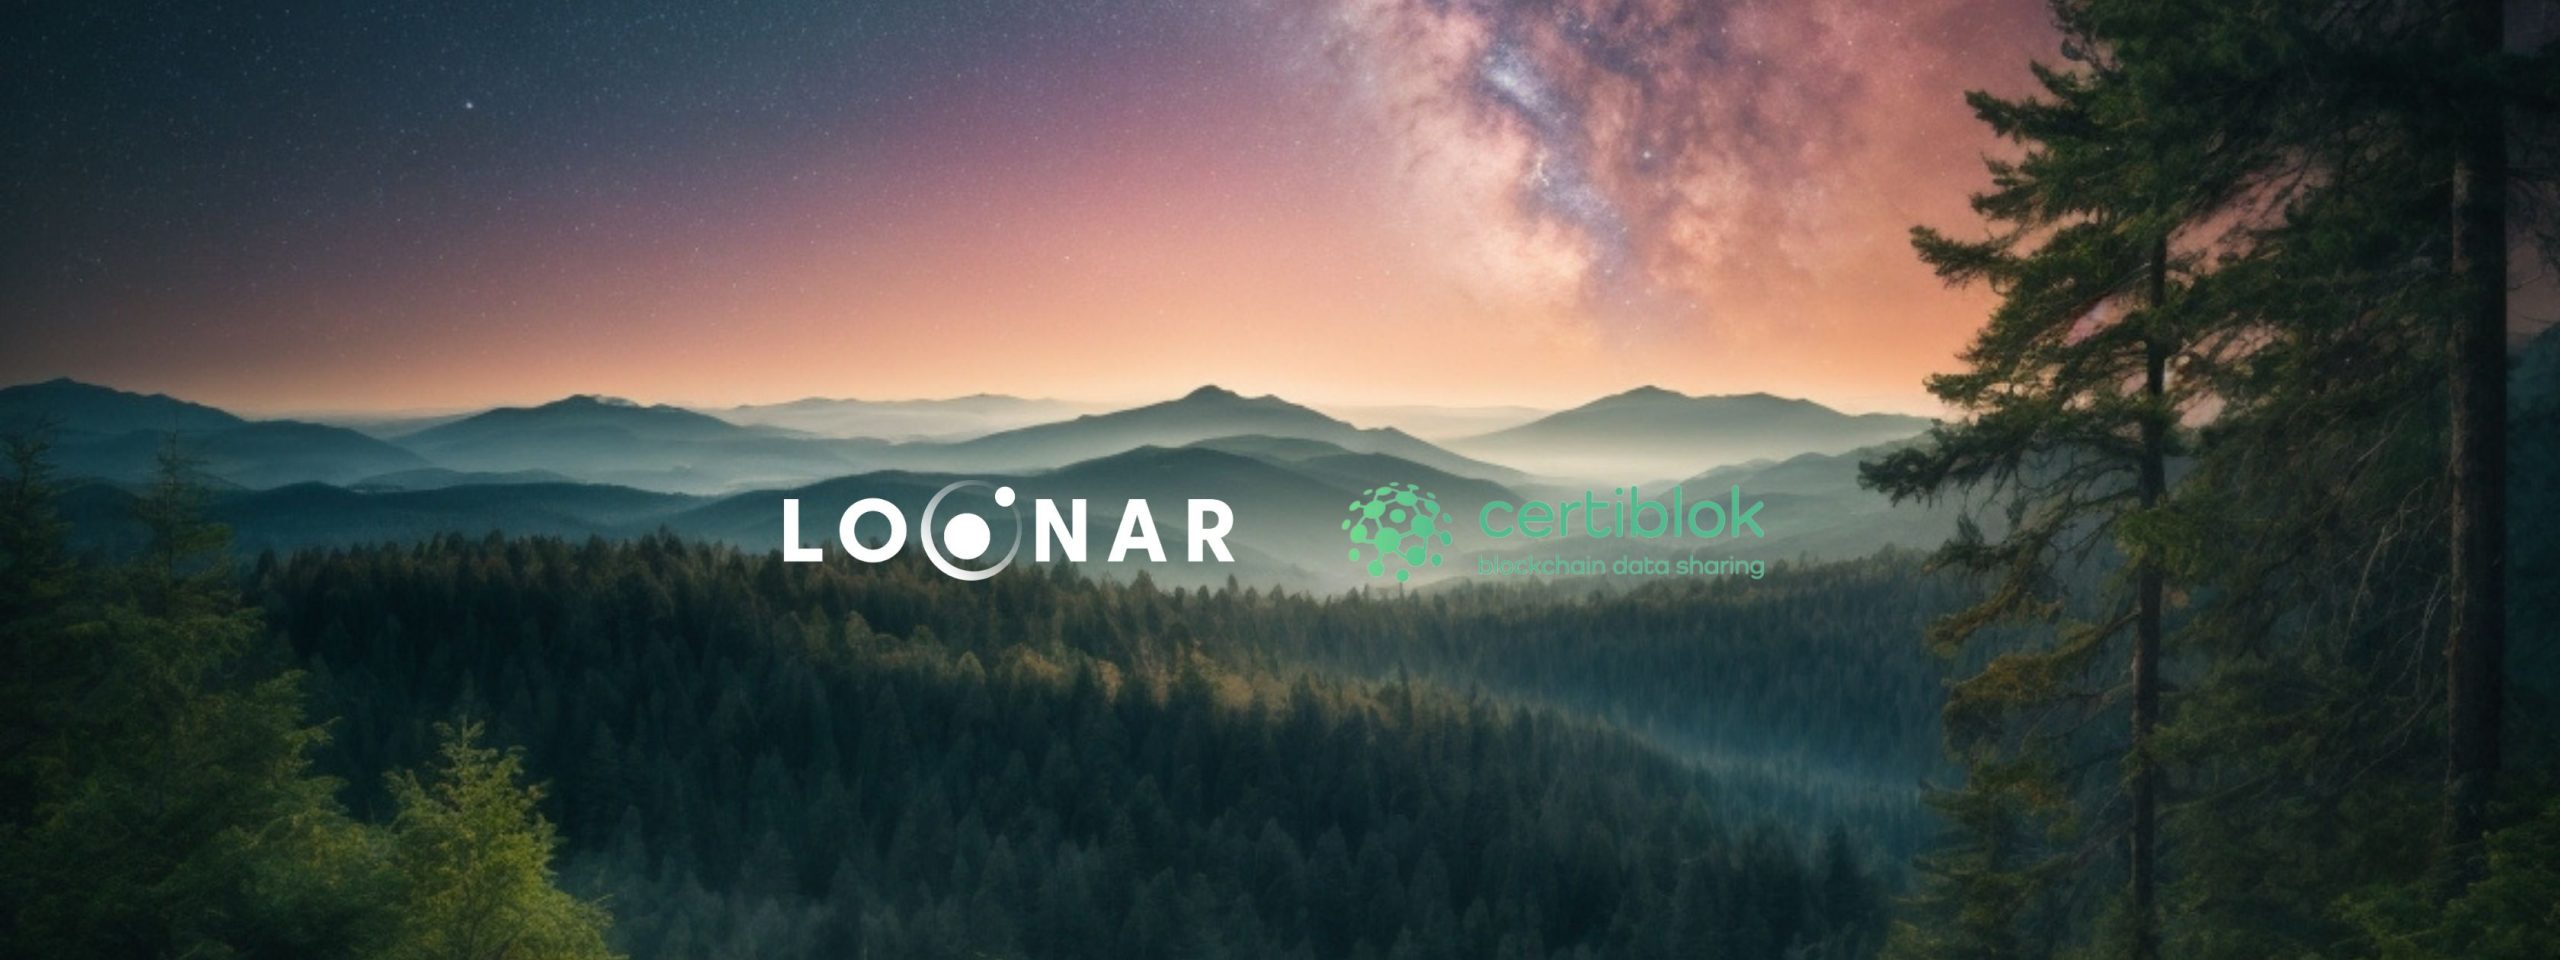 L’effervescente sinergia tra Loonar e Certiblok: un viaggio nel futuro digitale